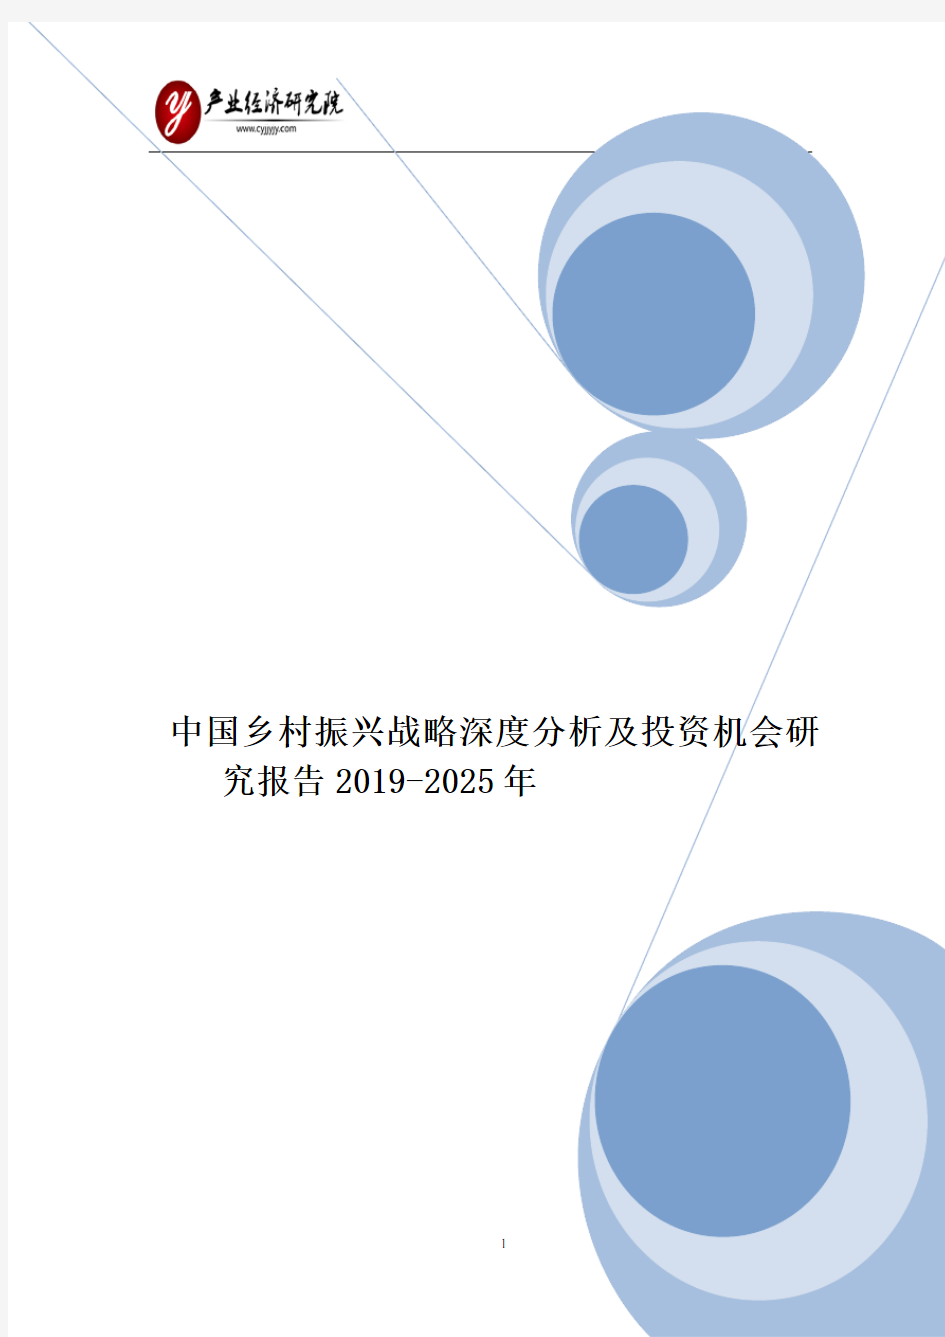 中国乡村振兴战略深度分析及投资机会研究报告2019-2025年